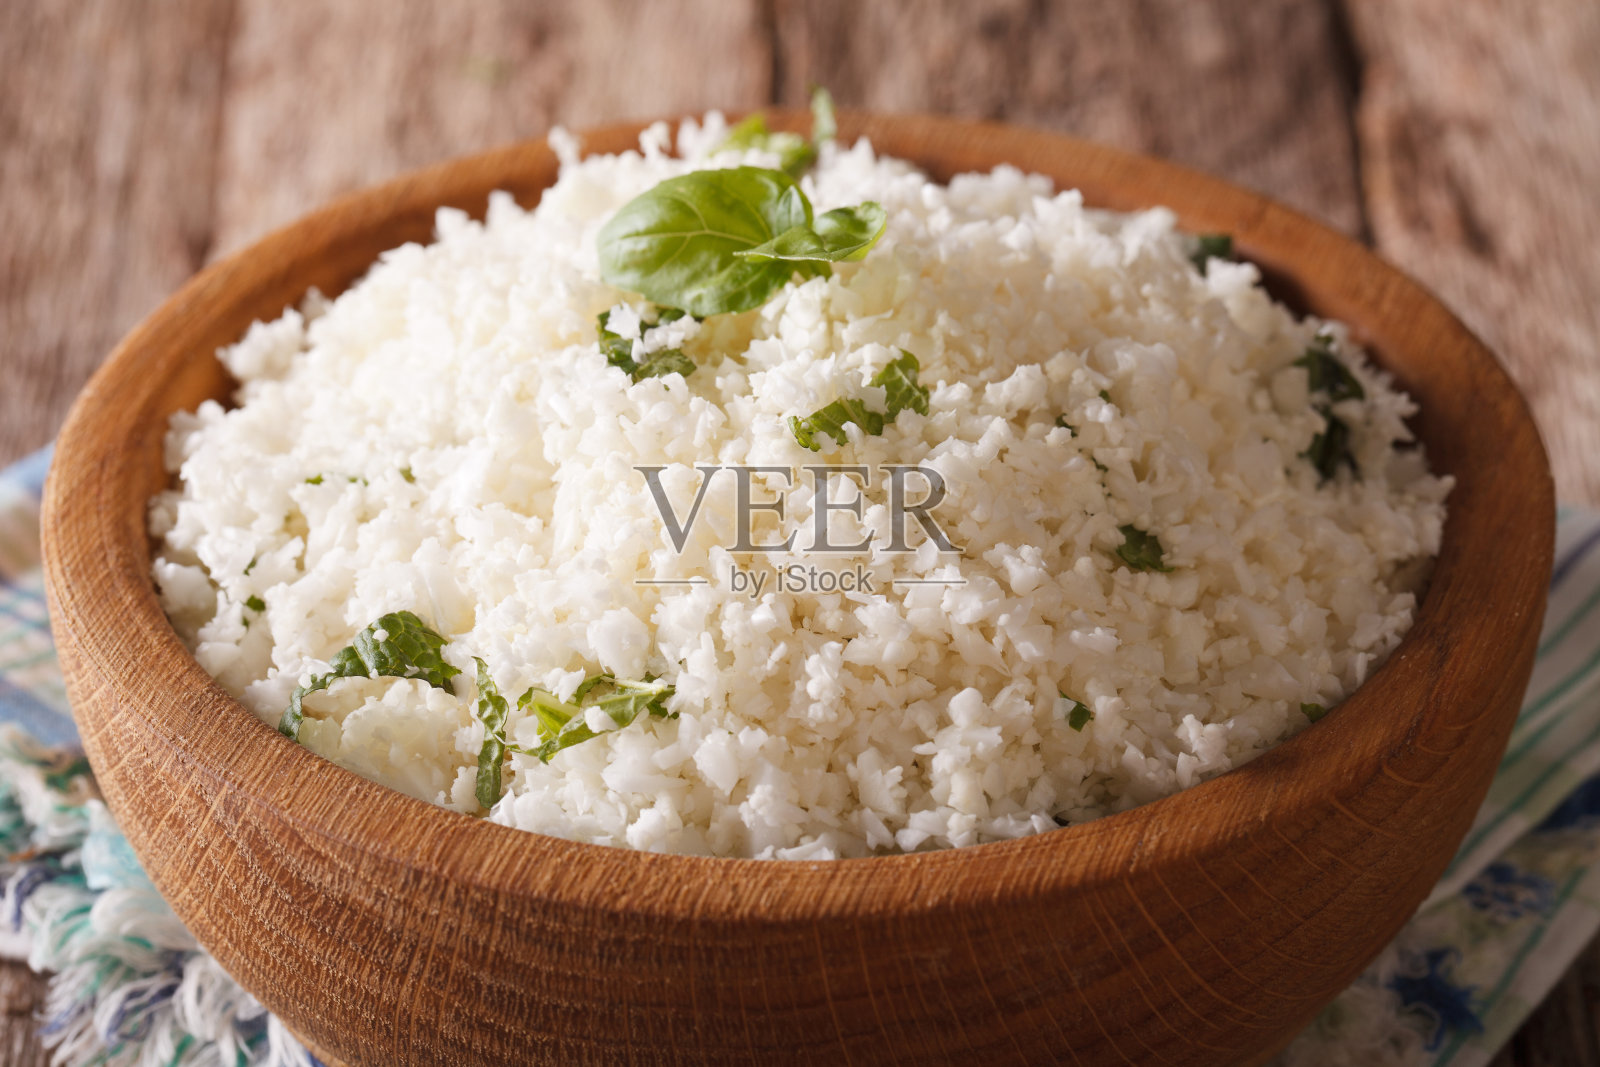 原始人食物:花椰菜米饭配香草。水平照片摄影图片